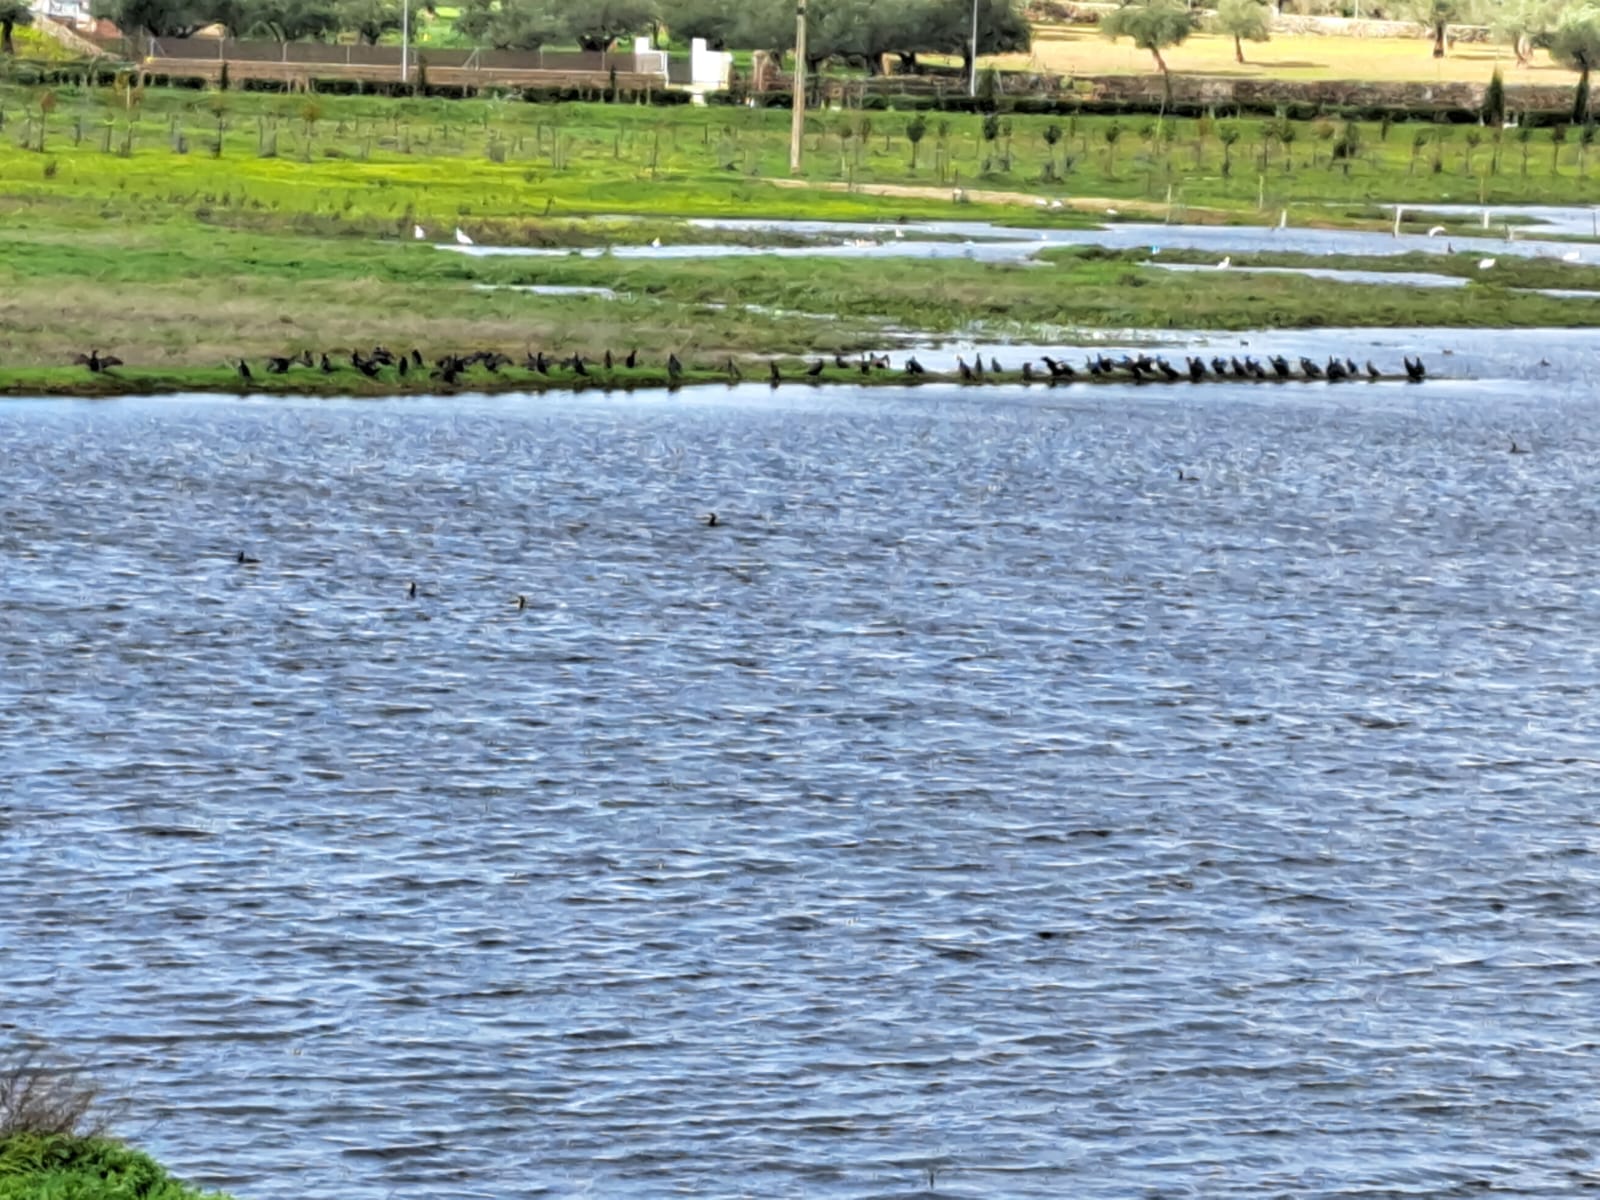 Autorizan a la Sociedad de Pescadores a ahuyentar la gran presencia de cormoranes con cohetes